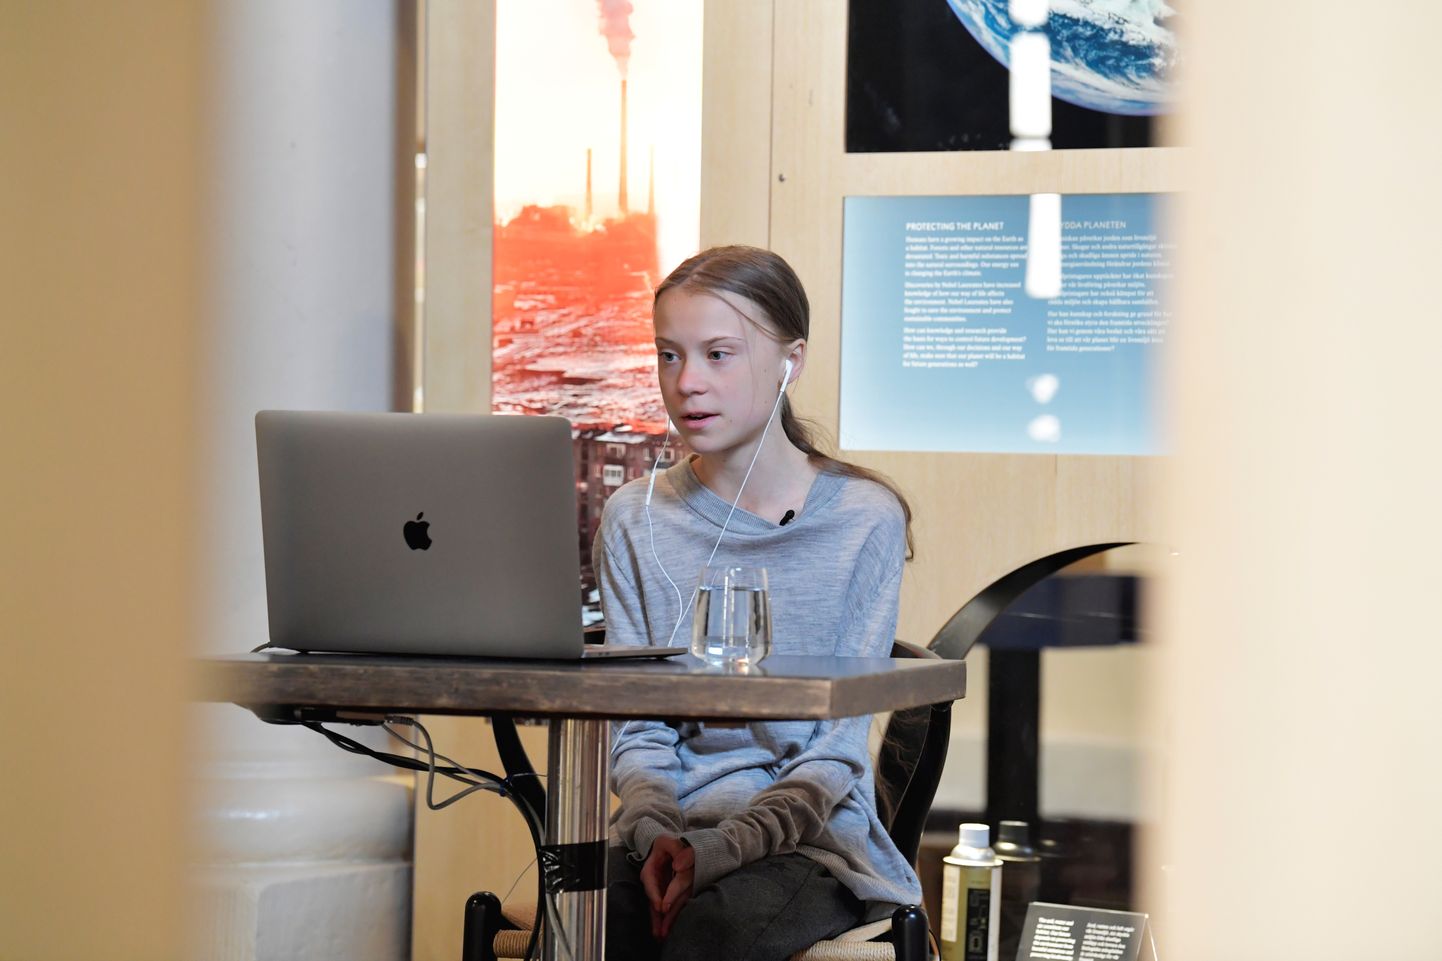 Kliimaaktivist Greta Thunberg 22. aprillil Stockholmis Nobeli muuseumis videoesinemisel